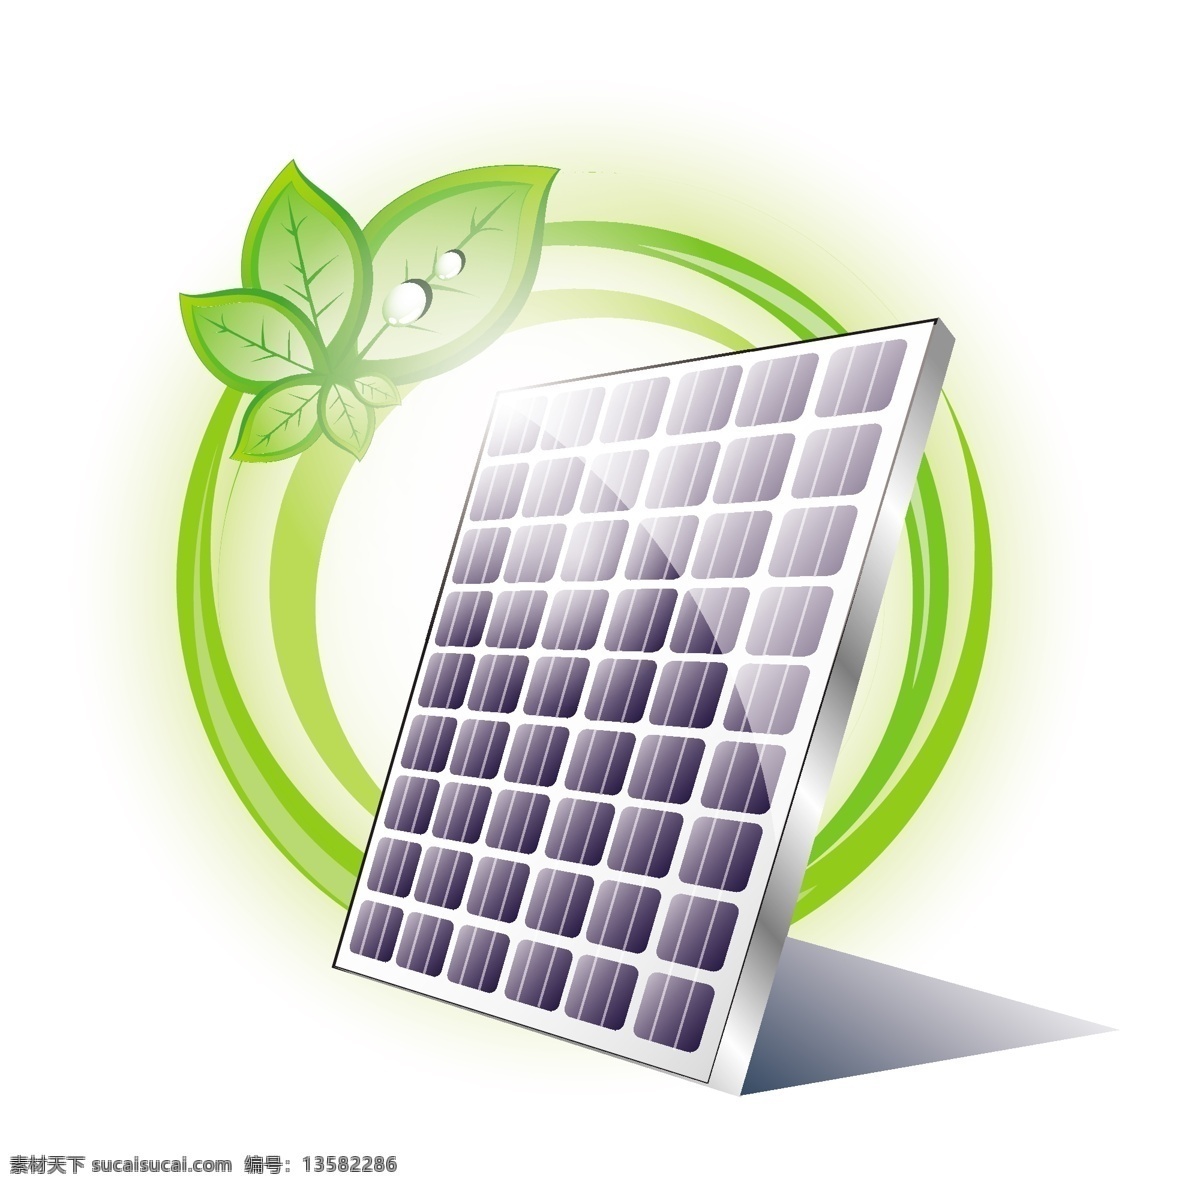 绿叶 太阳能板 水珠 水滴 能源 绿色 环保 节能 低碳 生态 手绘 绿色环保 背景 矢量